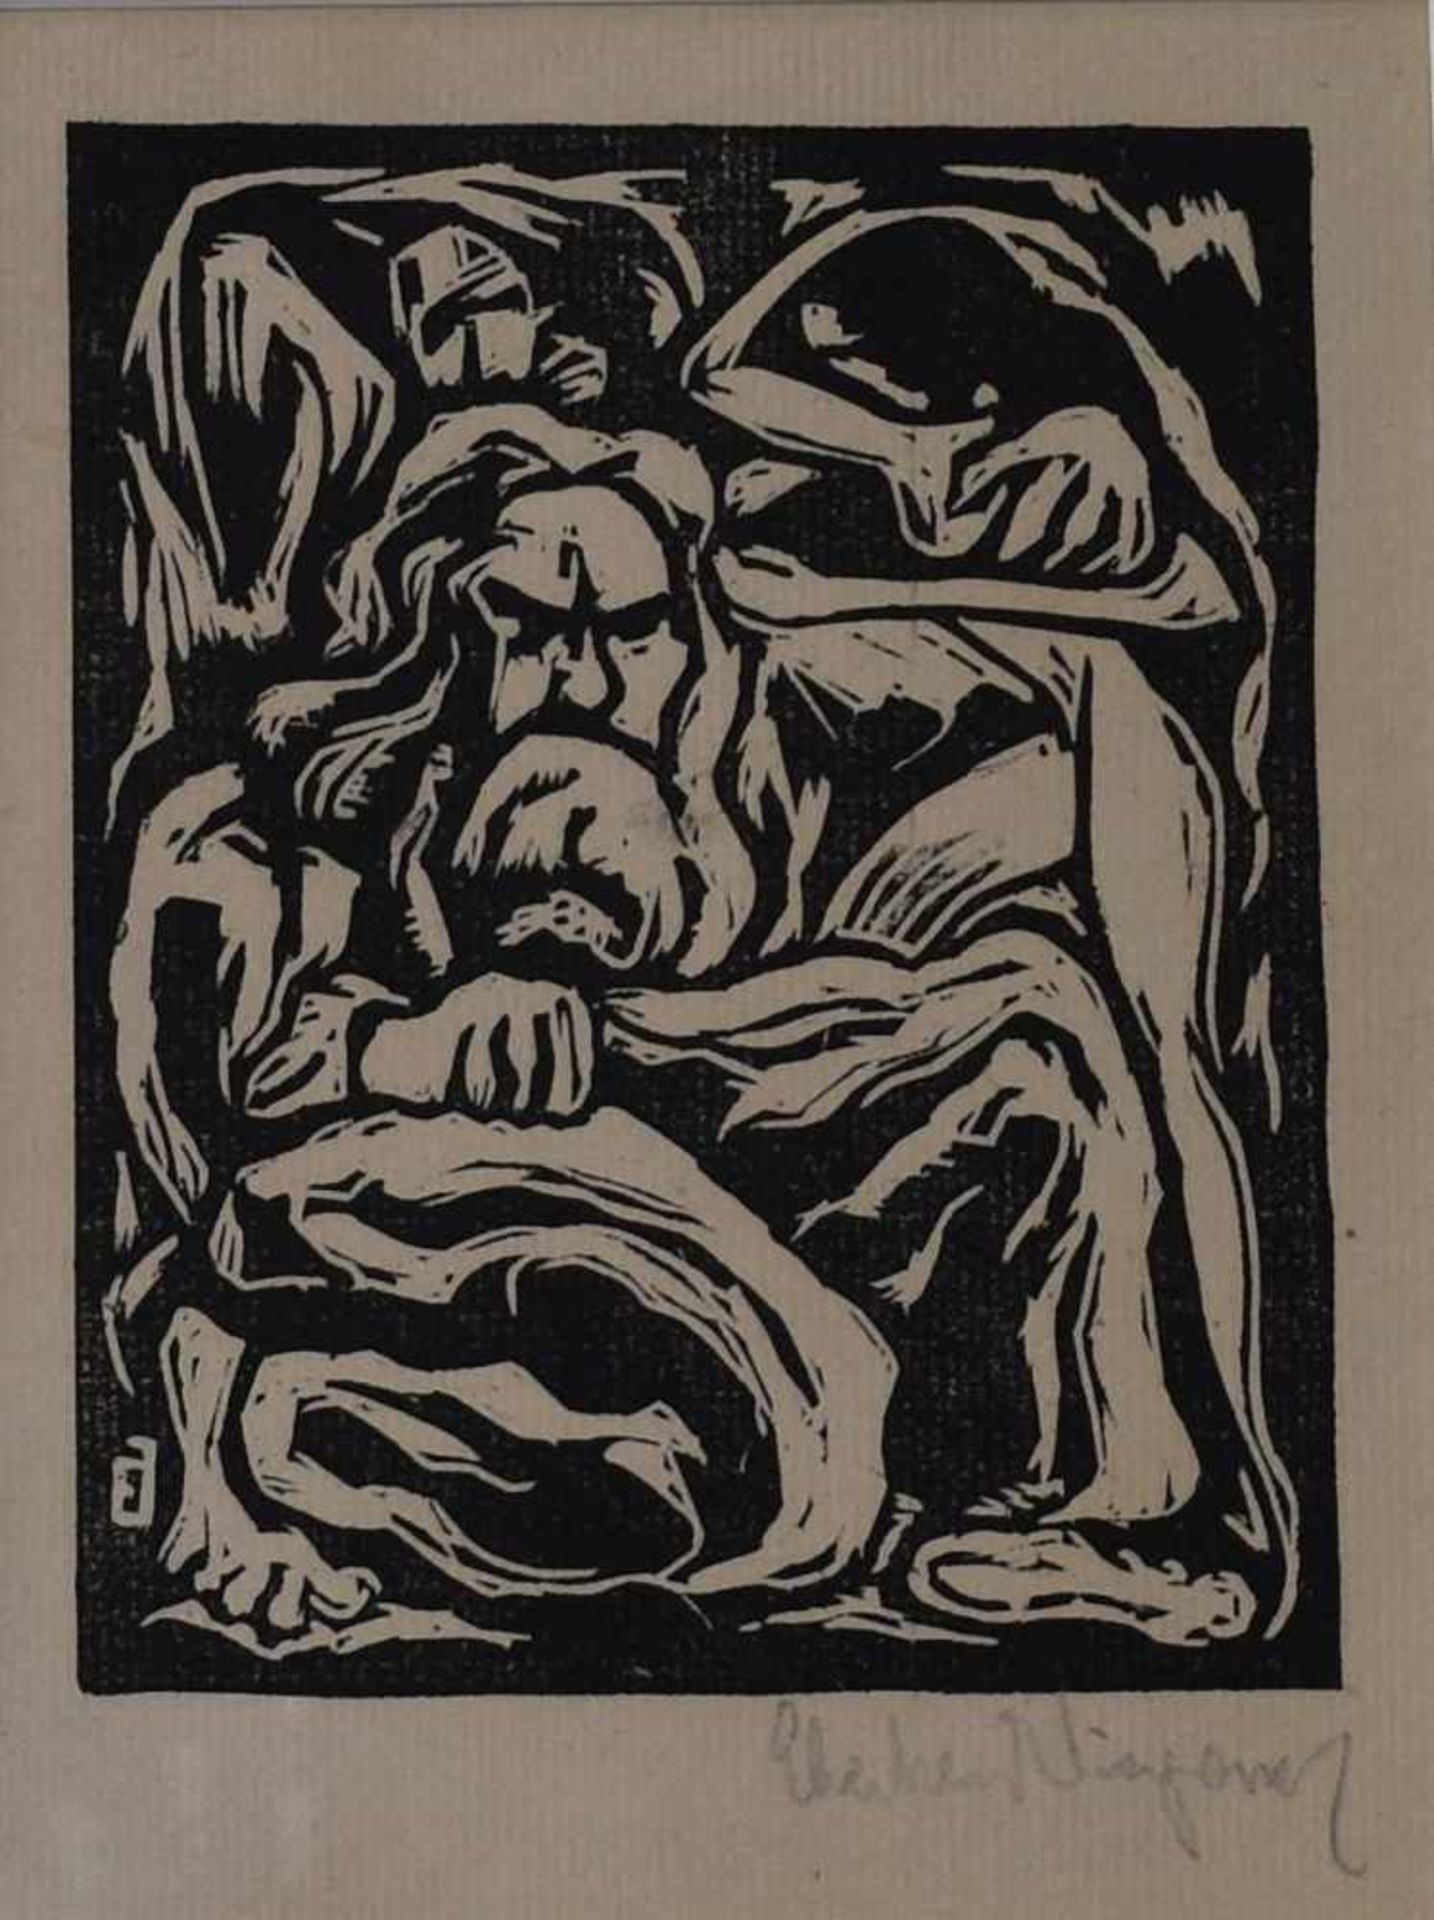 Viegener, Eberhard (1890 - 1967), "Mann mit Bart"